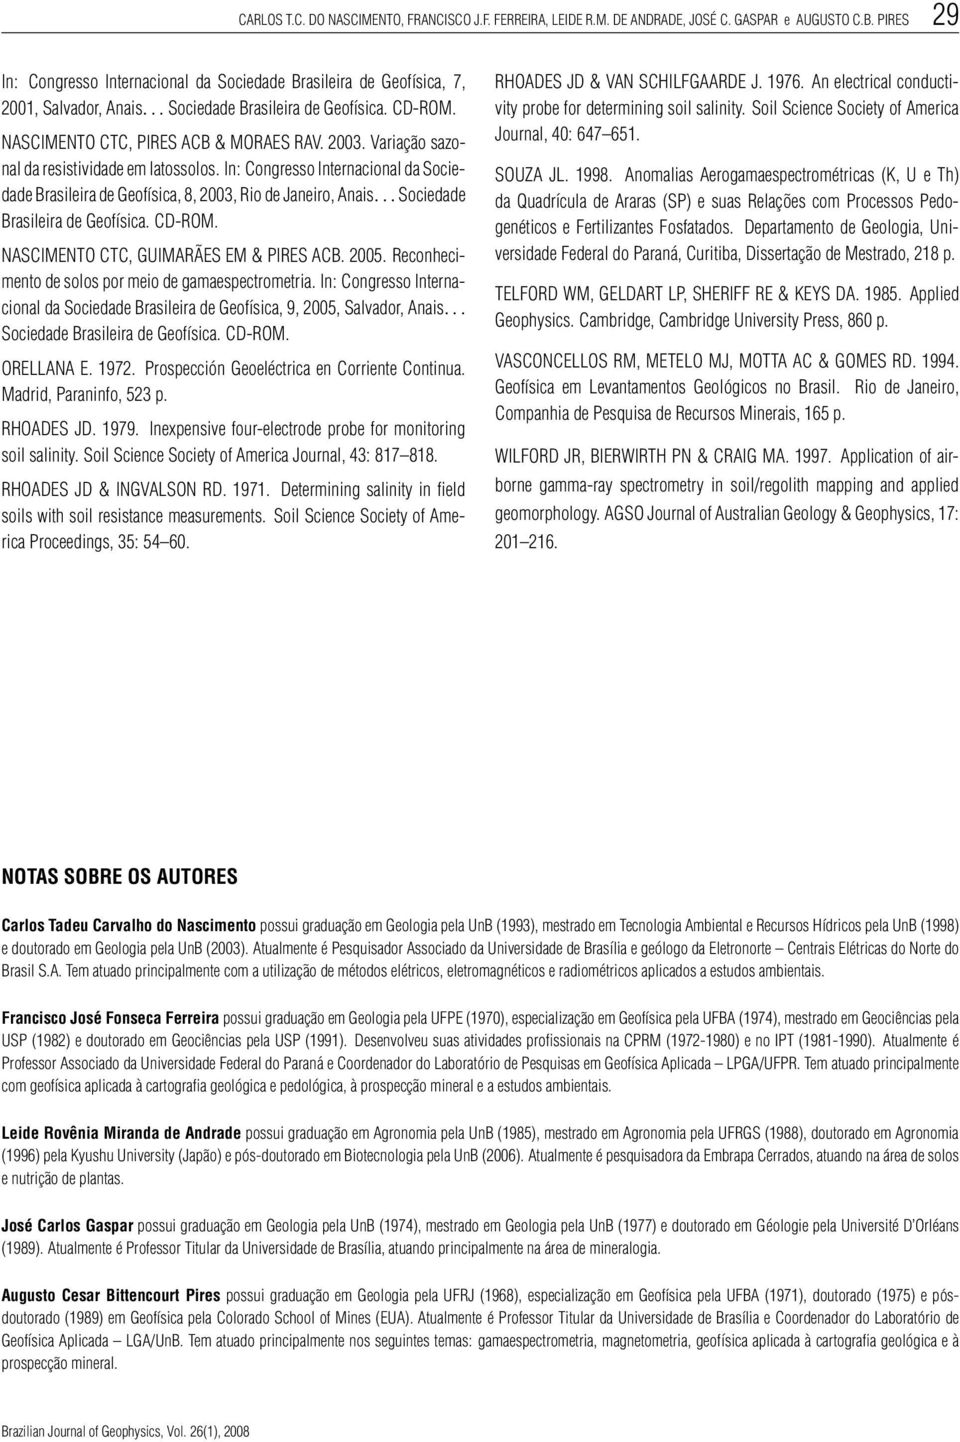 Variação sazonal da resistividade em latossolos. In: Congresso Internacional da Sociedade Brasileira de Geofísica, 8, 2003, Rio de Janeiro, Anais...Sociedade Brasileira de Geofísica. CD-ROM.